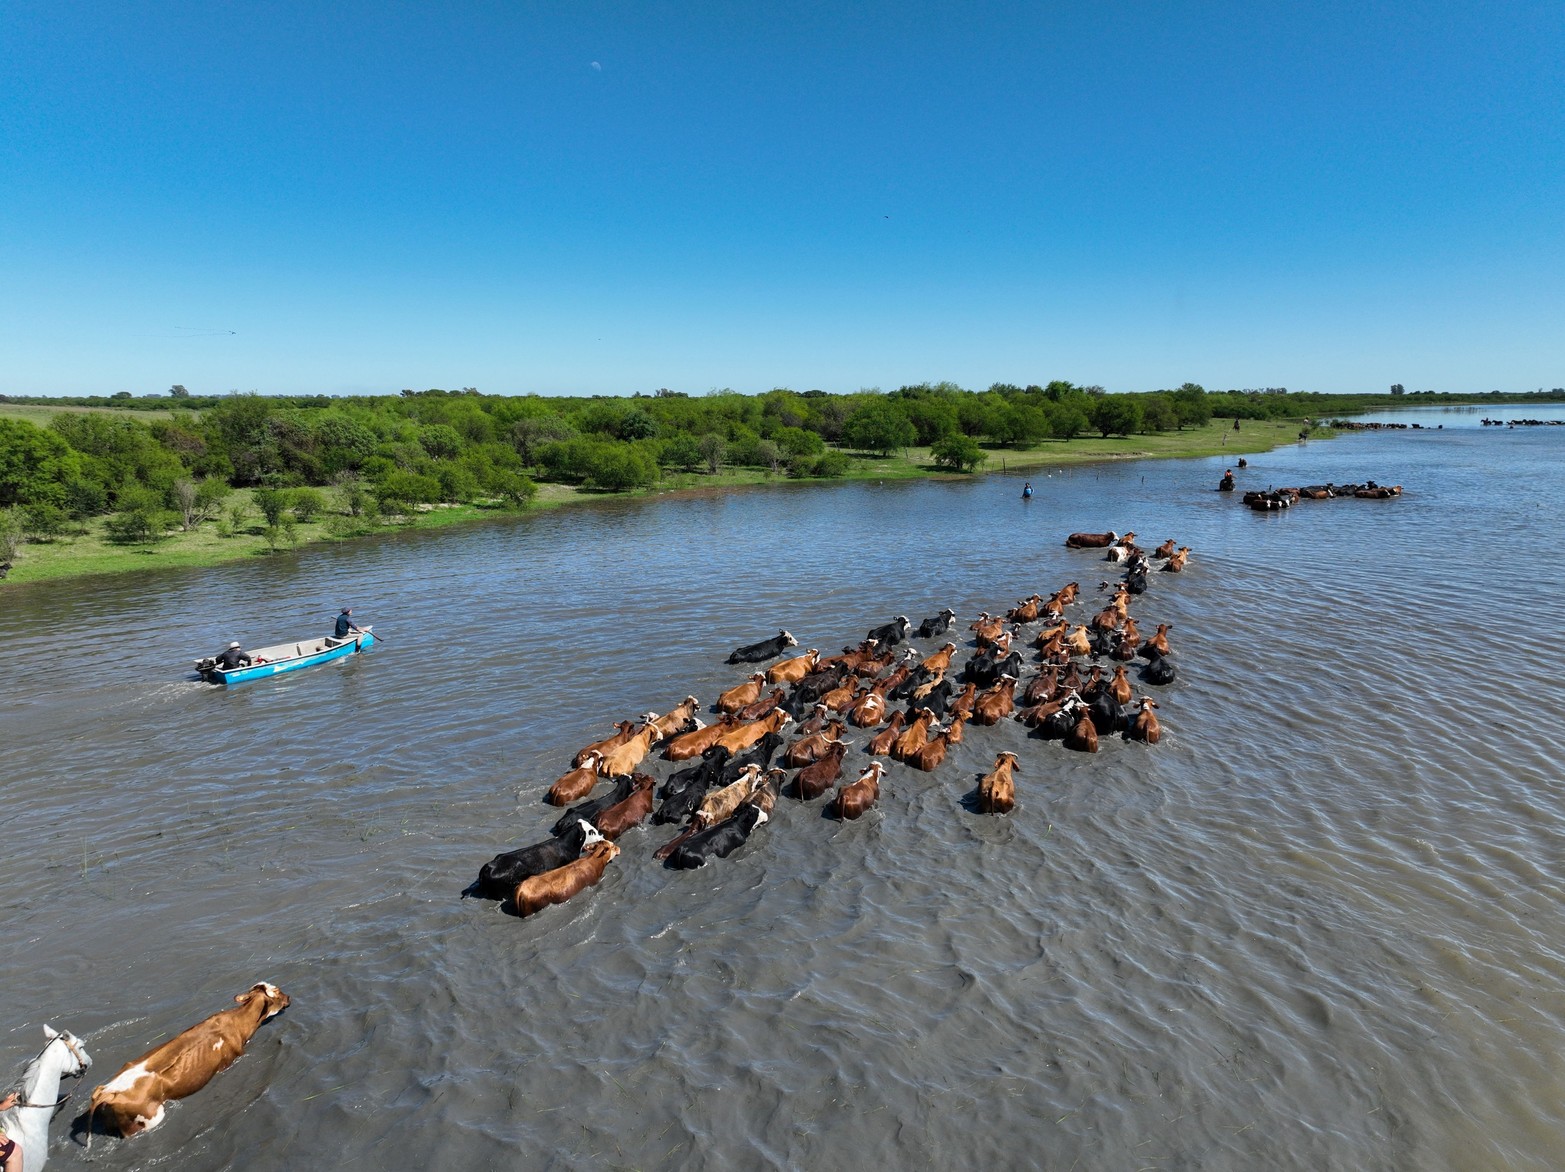 Más de 5 millones de cabezas afectadas por la crecida. La zona de islas sirvió de refugio para la ganadería de Corrientes, Entre Ríos y Santa Fe durante la sequía. Sin embargo, la súbita crecida del Paraná, obliga a evacuar la hacienda.